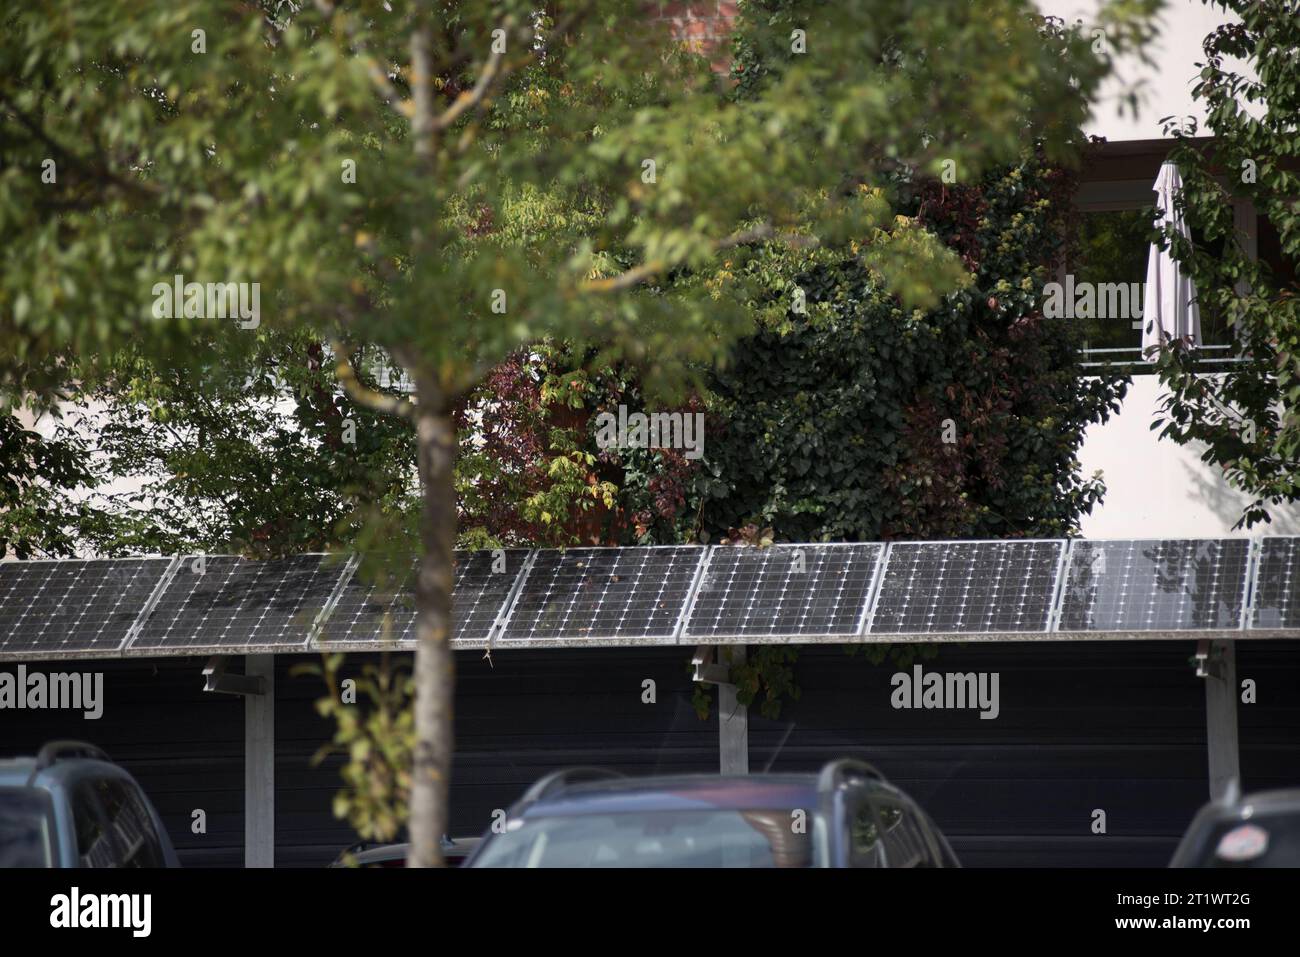 Solarmodul Und Photovoltaik Zur Erzeugung Von Nachhaltiger Energie Und Energie Solarpanel Und Photovoltaik Für Nachhaltige Energie Credit: Imago/Alamy Live News Stockfoto